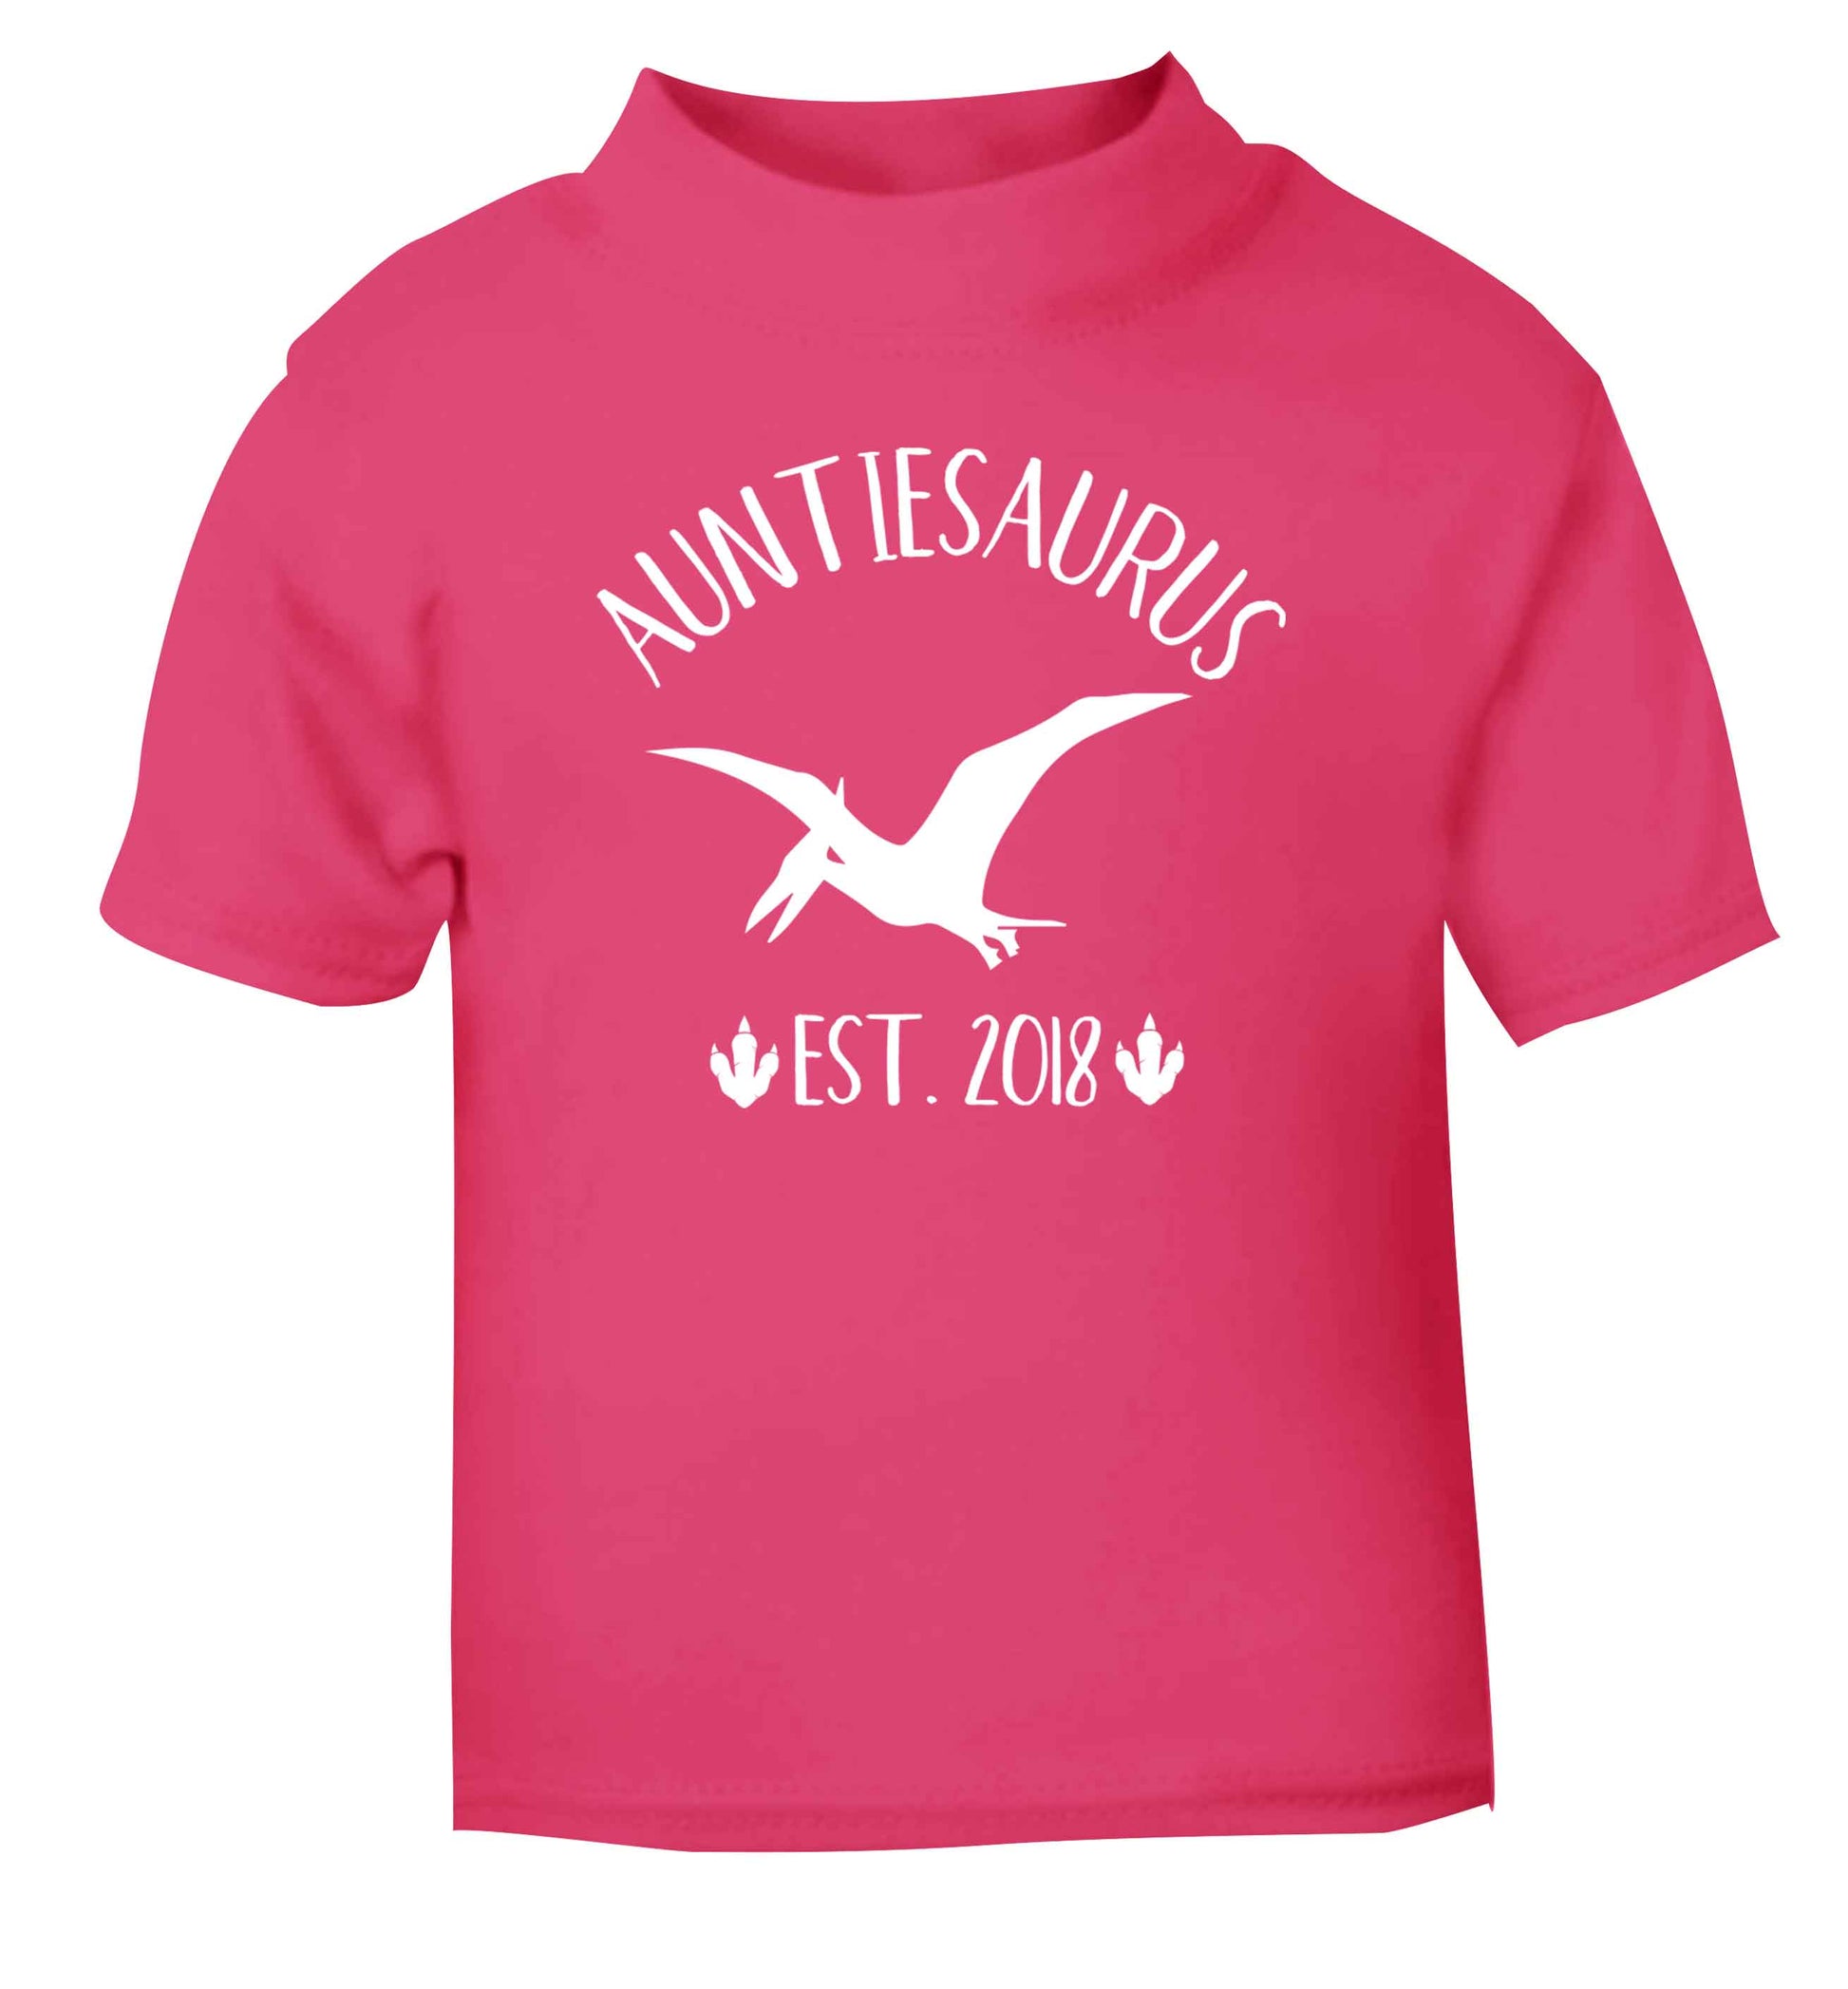 Personalised auntiesaurus since (custom date) pink Baby Toddler Tshirt 2 Years